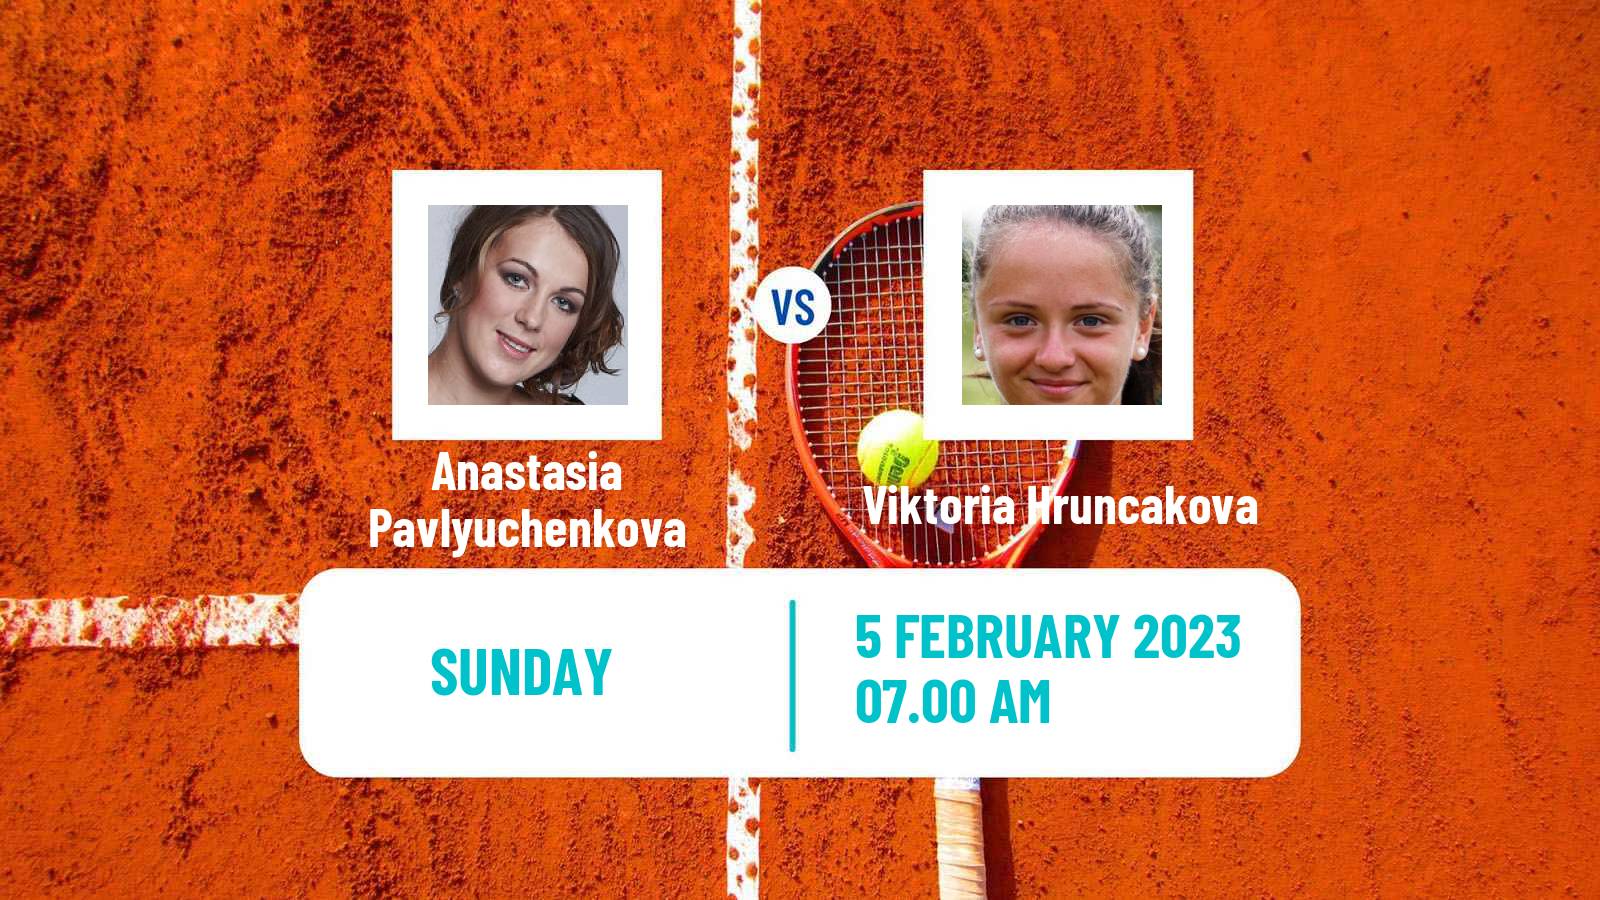 Tennis WTA Linz Anastasia Pavlyuchenkova - Viktoria Hruncakova